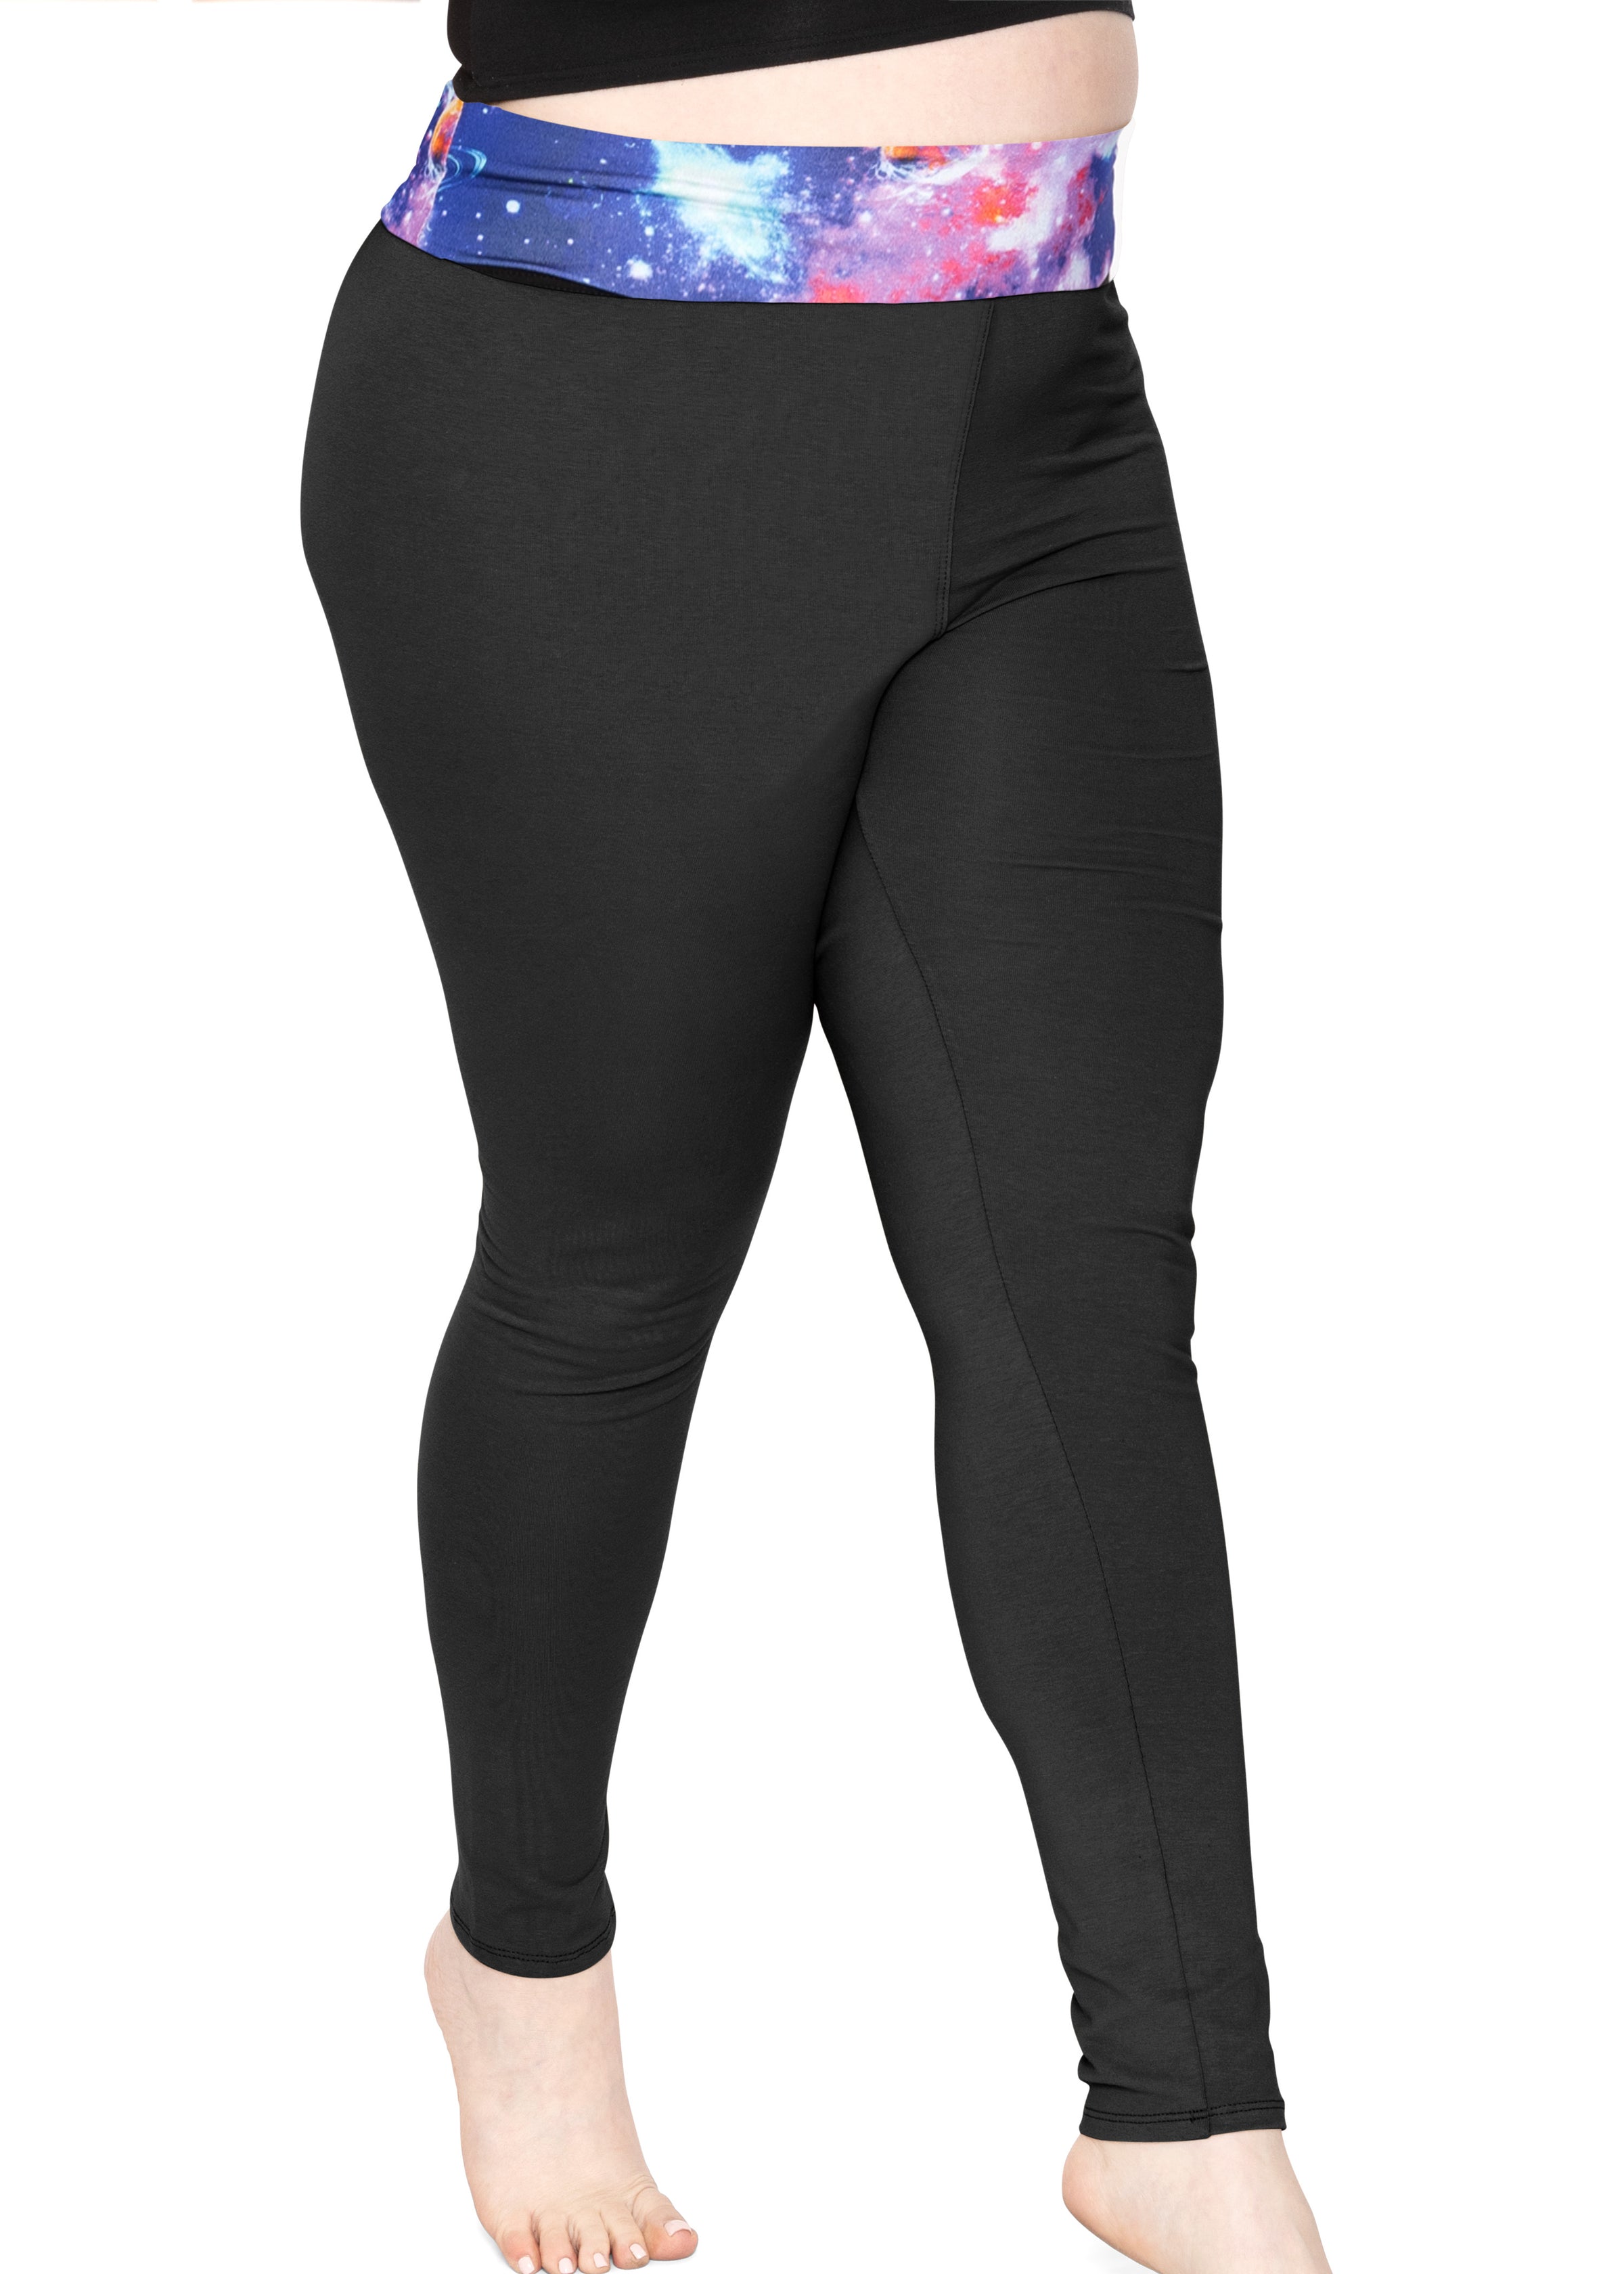 Couver Women's Cotton Spandex Basic Leggings Pants (Plus Size), Black XL, 1  Count, 1 Pack